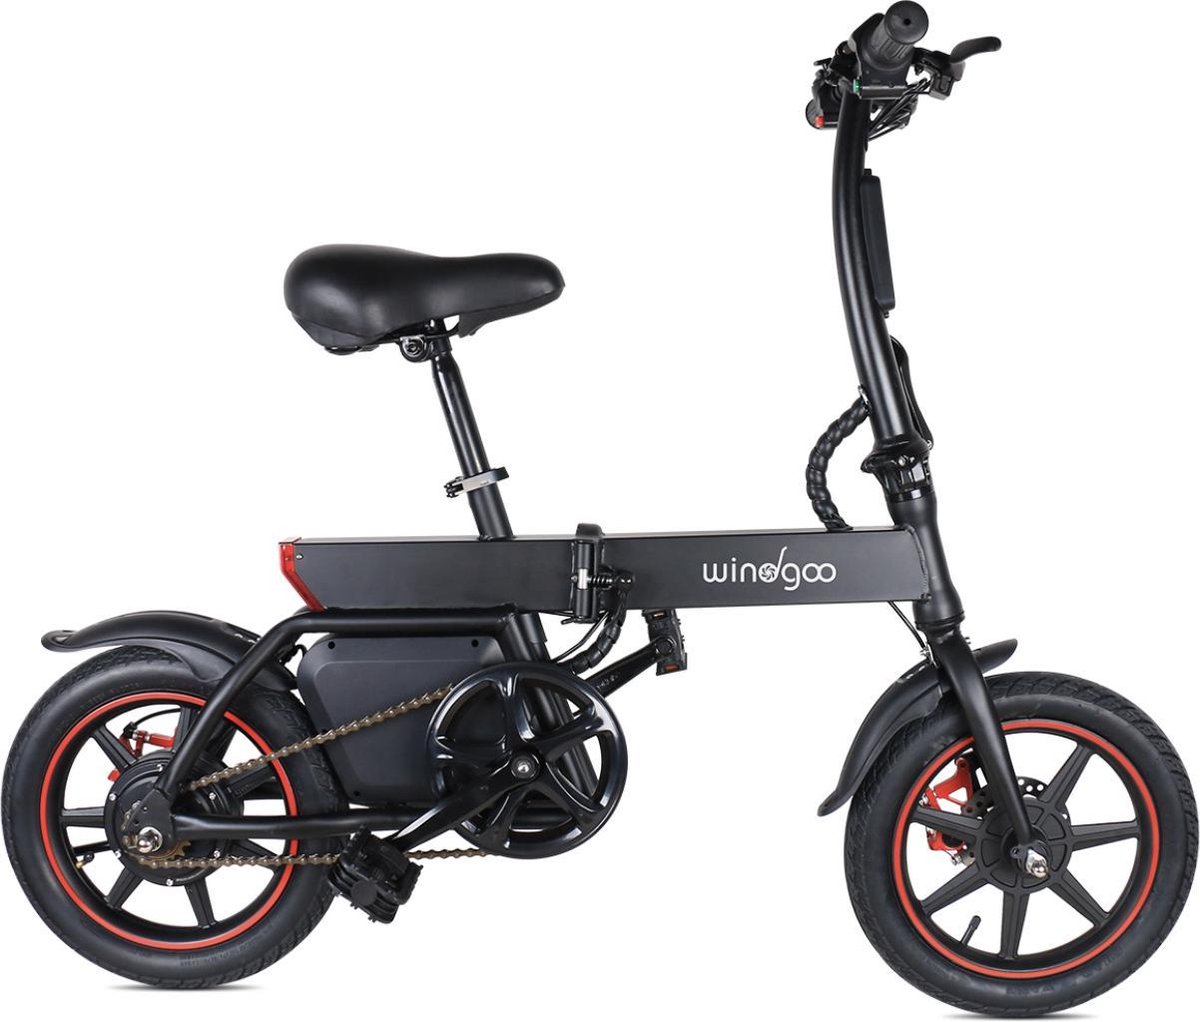 Wind-goo EasyGO Windgoo B20 Elektrische fiets met trapondersteuning Zwart 25 km per uur